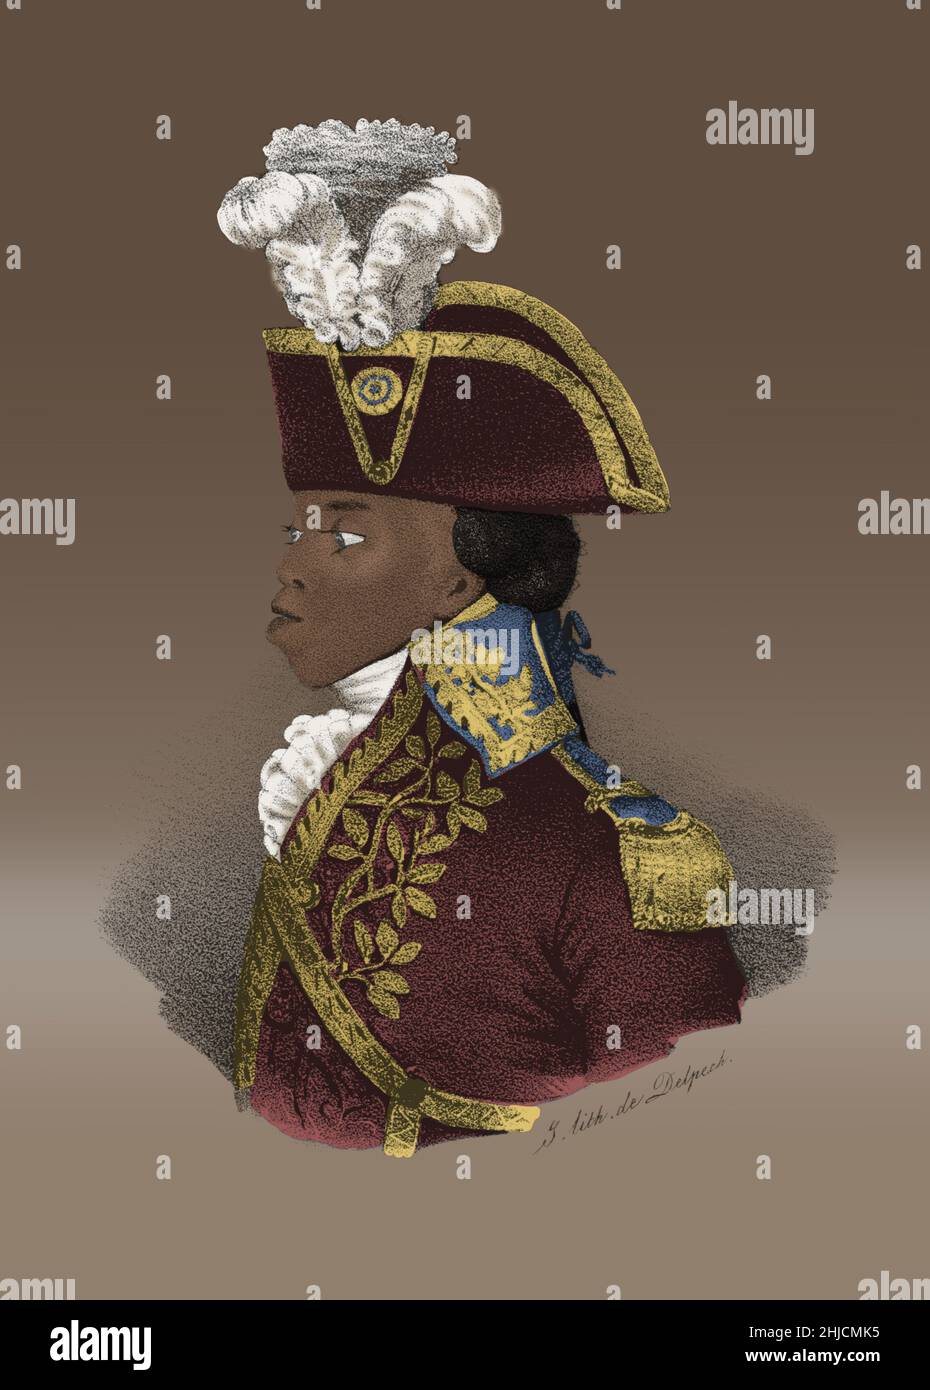 Toussaint L'Ouverture (20. Mai 1743 - 7. April 1803) war ein haitianischer General, der einen Sklavenaufstand in eine Bewegung, die haitianische Revolution, verwandelte. 1800 war Saint-Domingue, die wohlhabendste französische Sklavenkolonie der Zeit, die erste freie Kolonialgesellschaft geworden, die Rasse als Grundlage der sozialen Rangordnung abgelehnt hatte. L'Ouverture schuf eine de facto autonome Kolonie und die Verfassung proklamierte ihn zum Gouverneur für das Leben. Im Jahr 1802 war er gezwungen, von Kräften von Napoleon zur Wiederherstellung der französischen Autorität in der ehemaligen Kolonie. Er wurde nach Frankreich deportiert, wo er 1803 starb. Kein Künstler cr Stockfoto